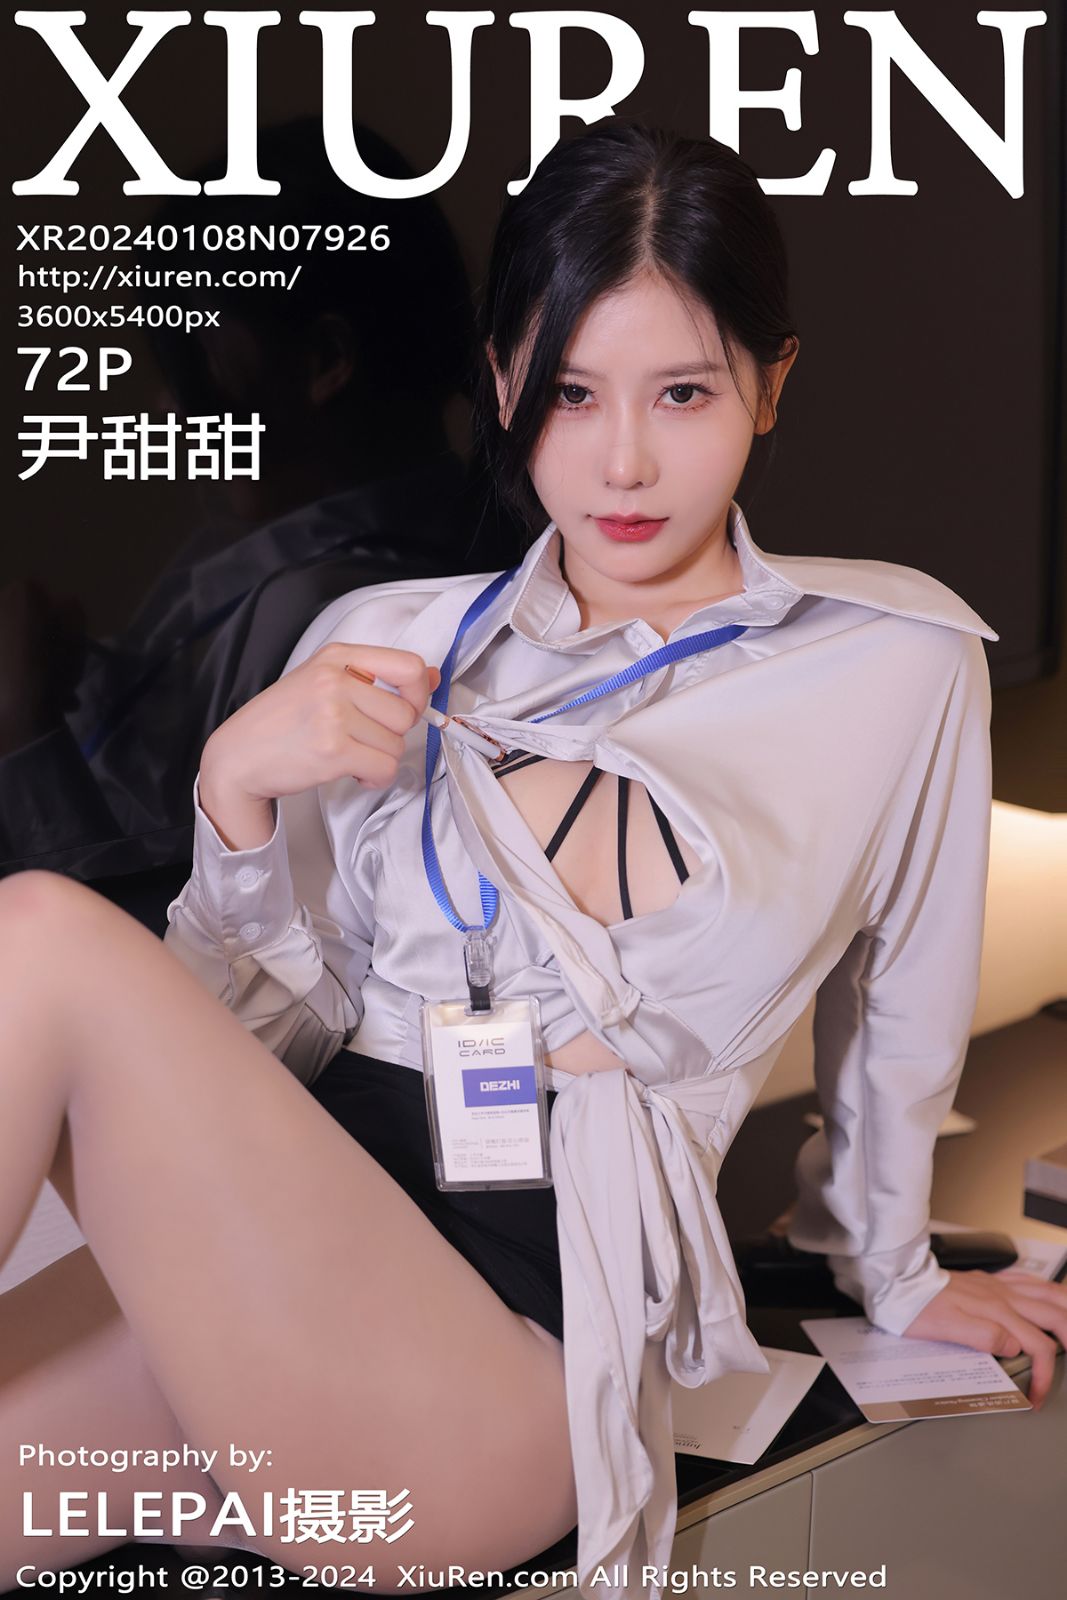 秀人网-第7926期-模特尹甜甜 性感写真 72张